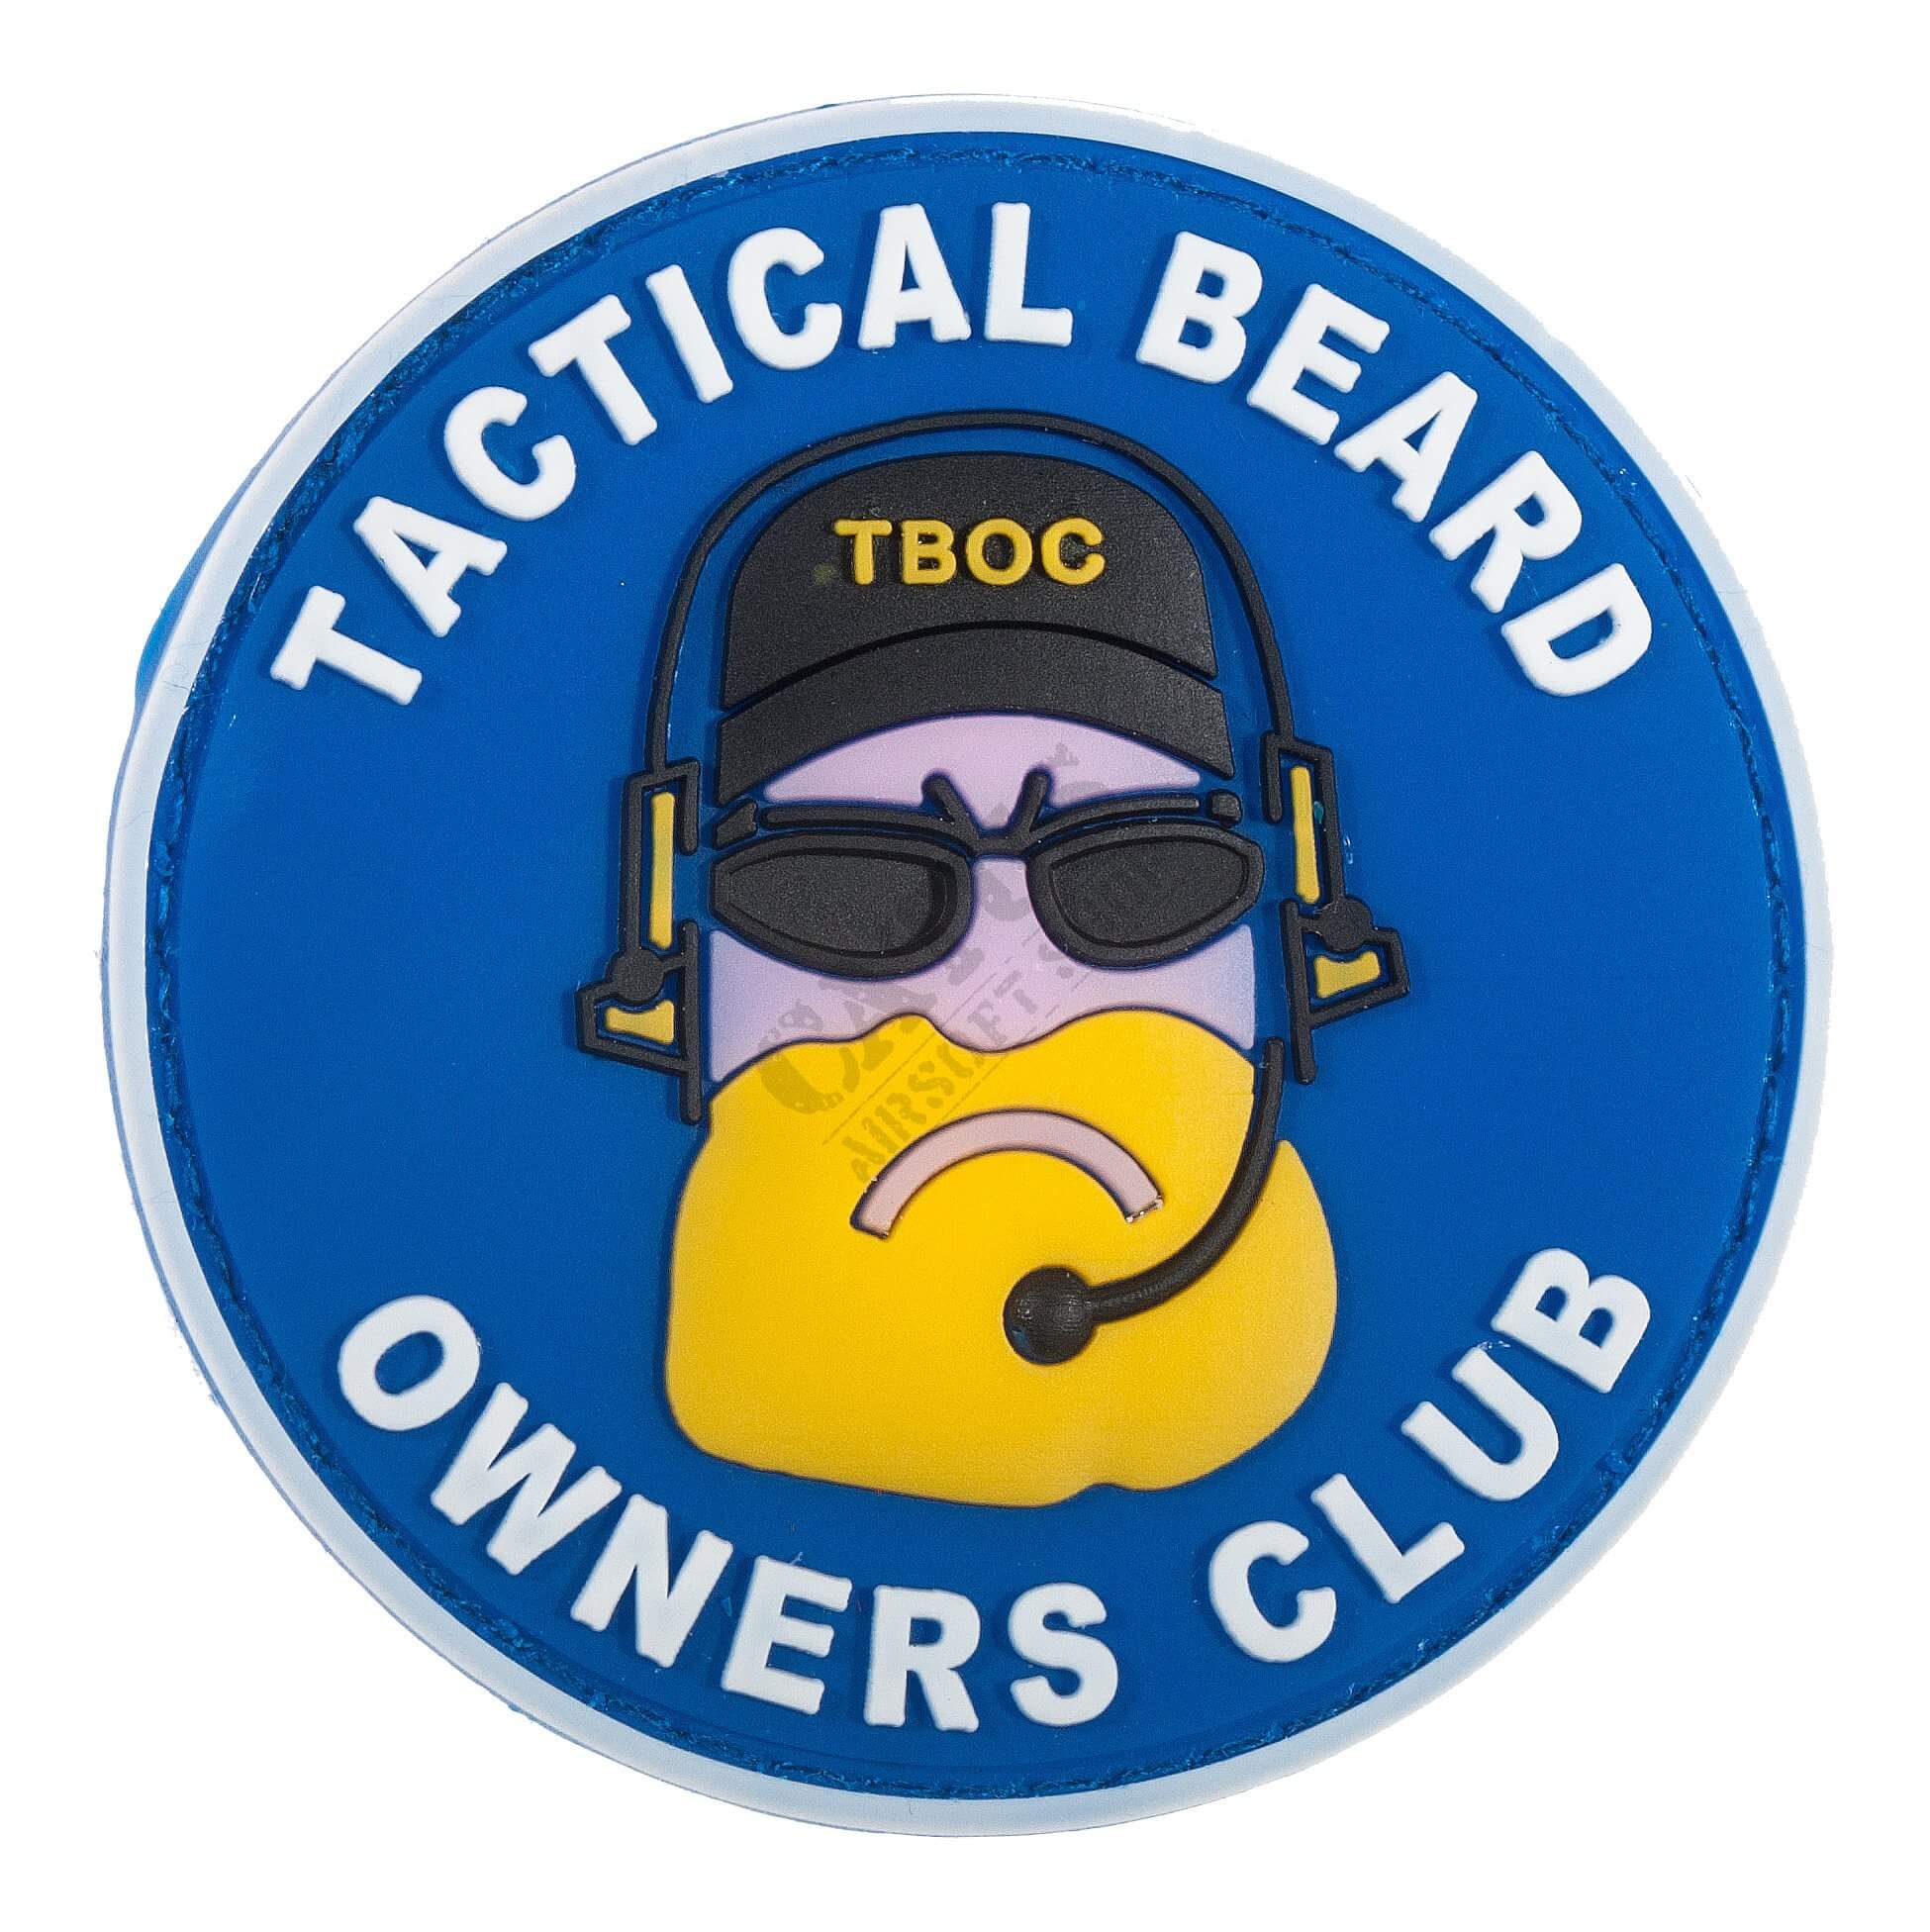 Billede af DA Tactical Beard Owners Club Patch Blå/Hvid